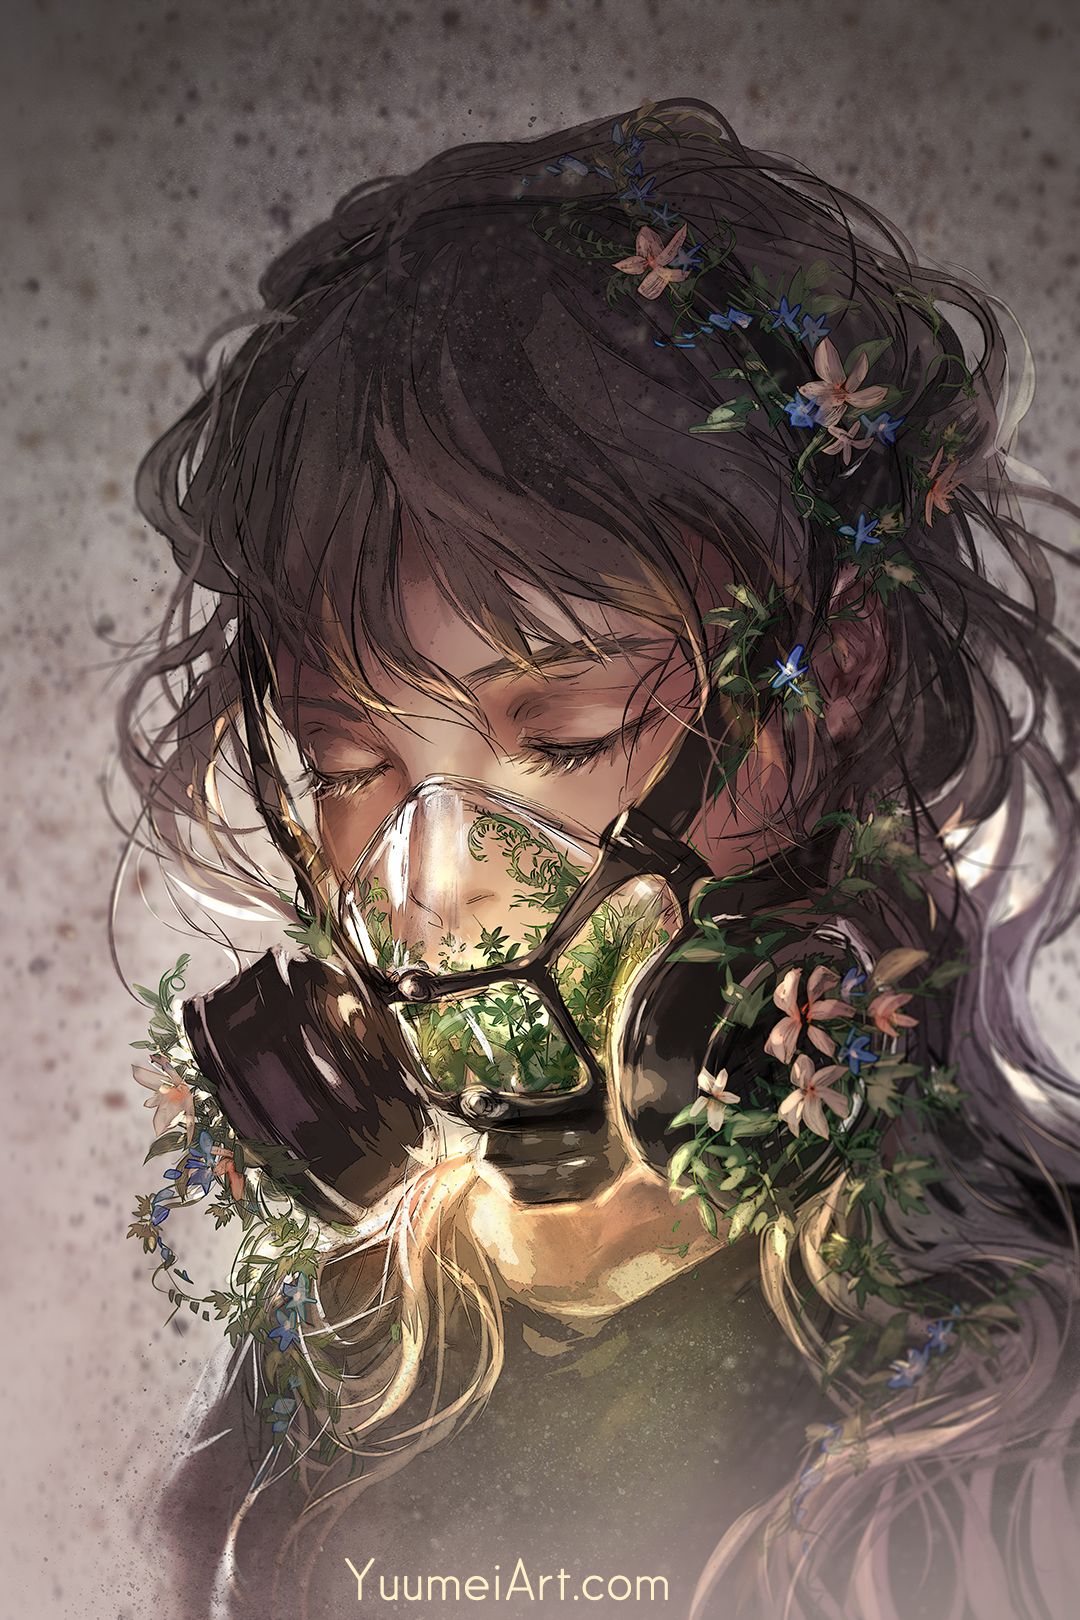 Yuumei Drawing Women Brunette Mask Overgrown Flowers Plants Closed Eyes Portrait 1080x1620